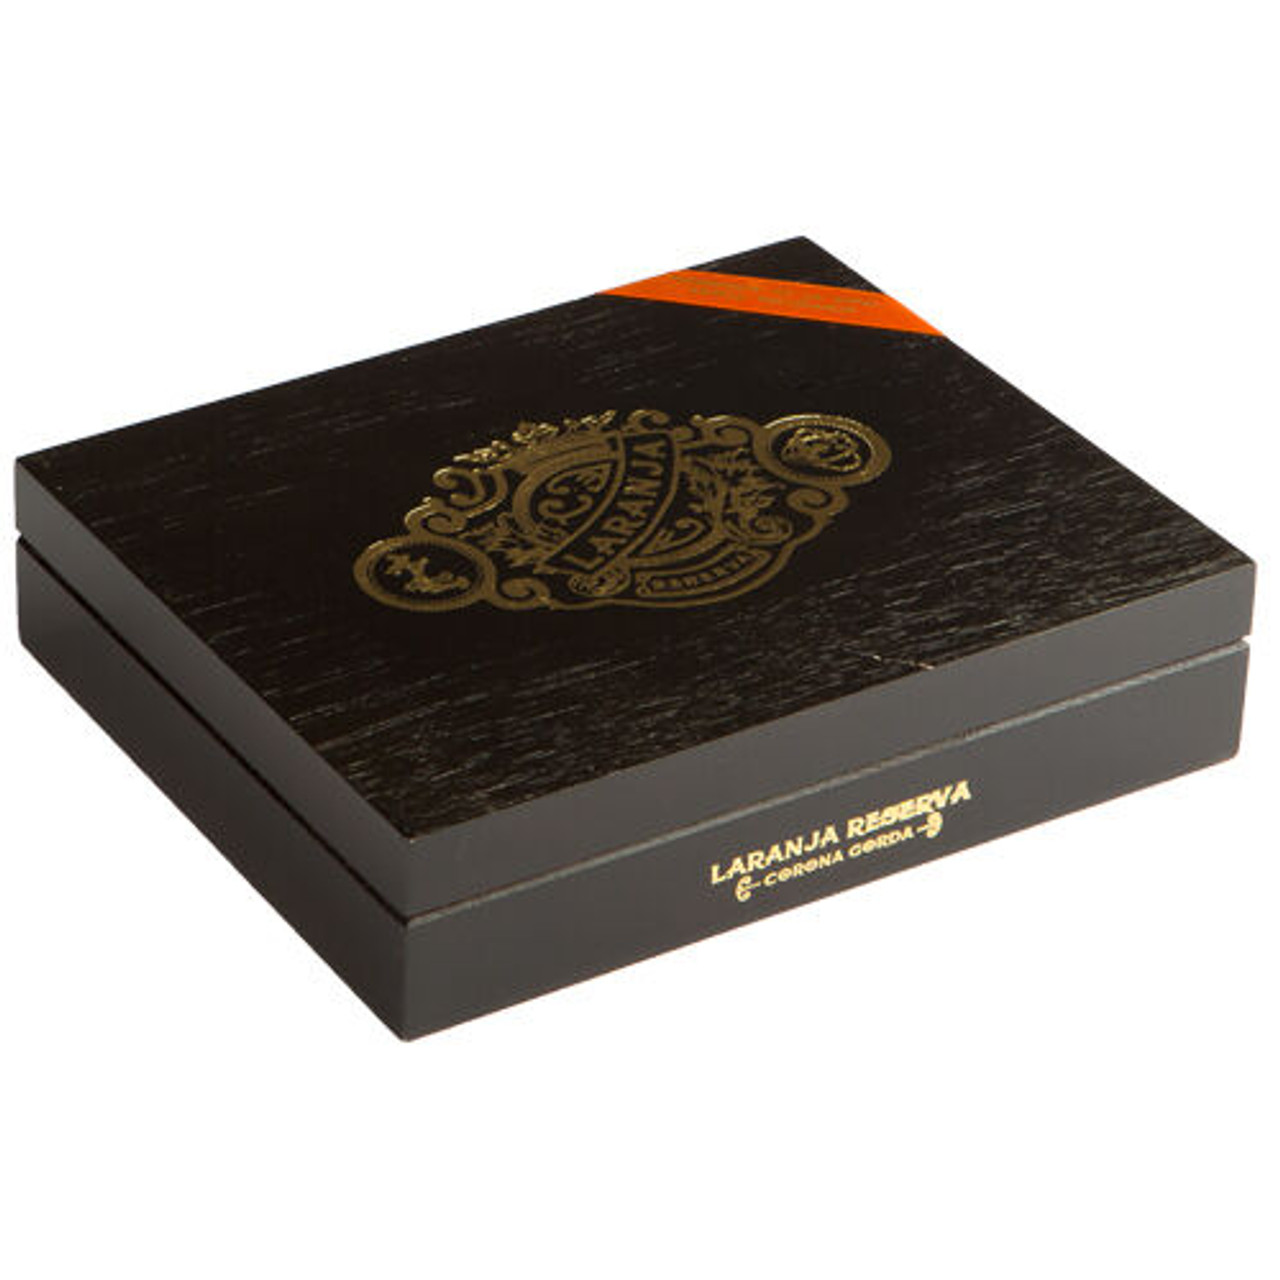 Espinosa Laranja Reserva Lancero Cigars - 7.5 x 38 (Box of 20) *Box